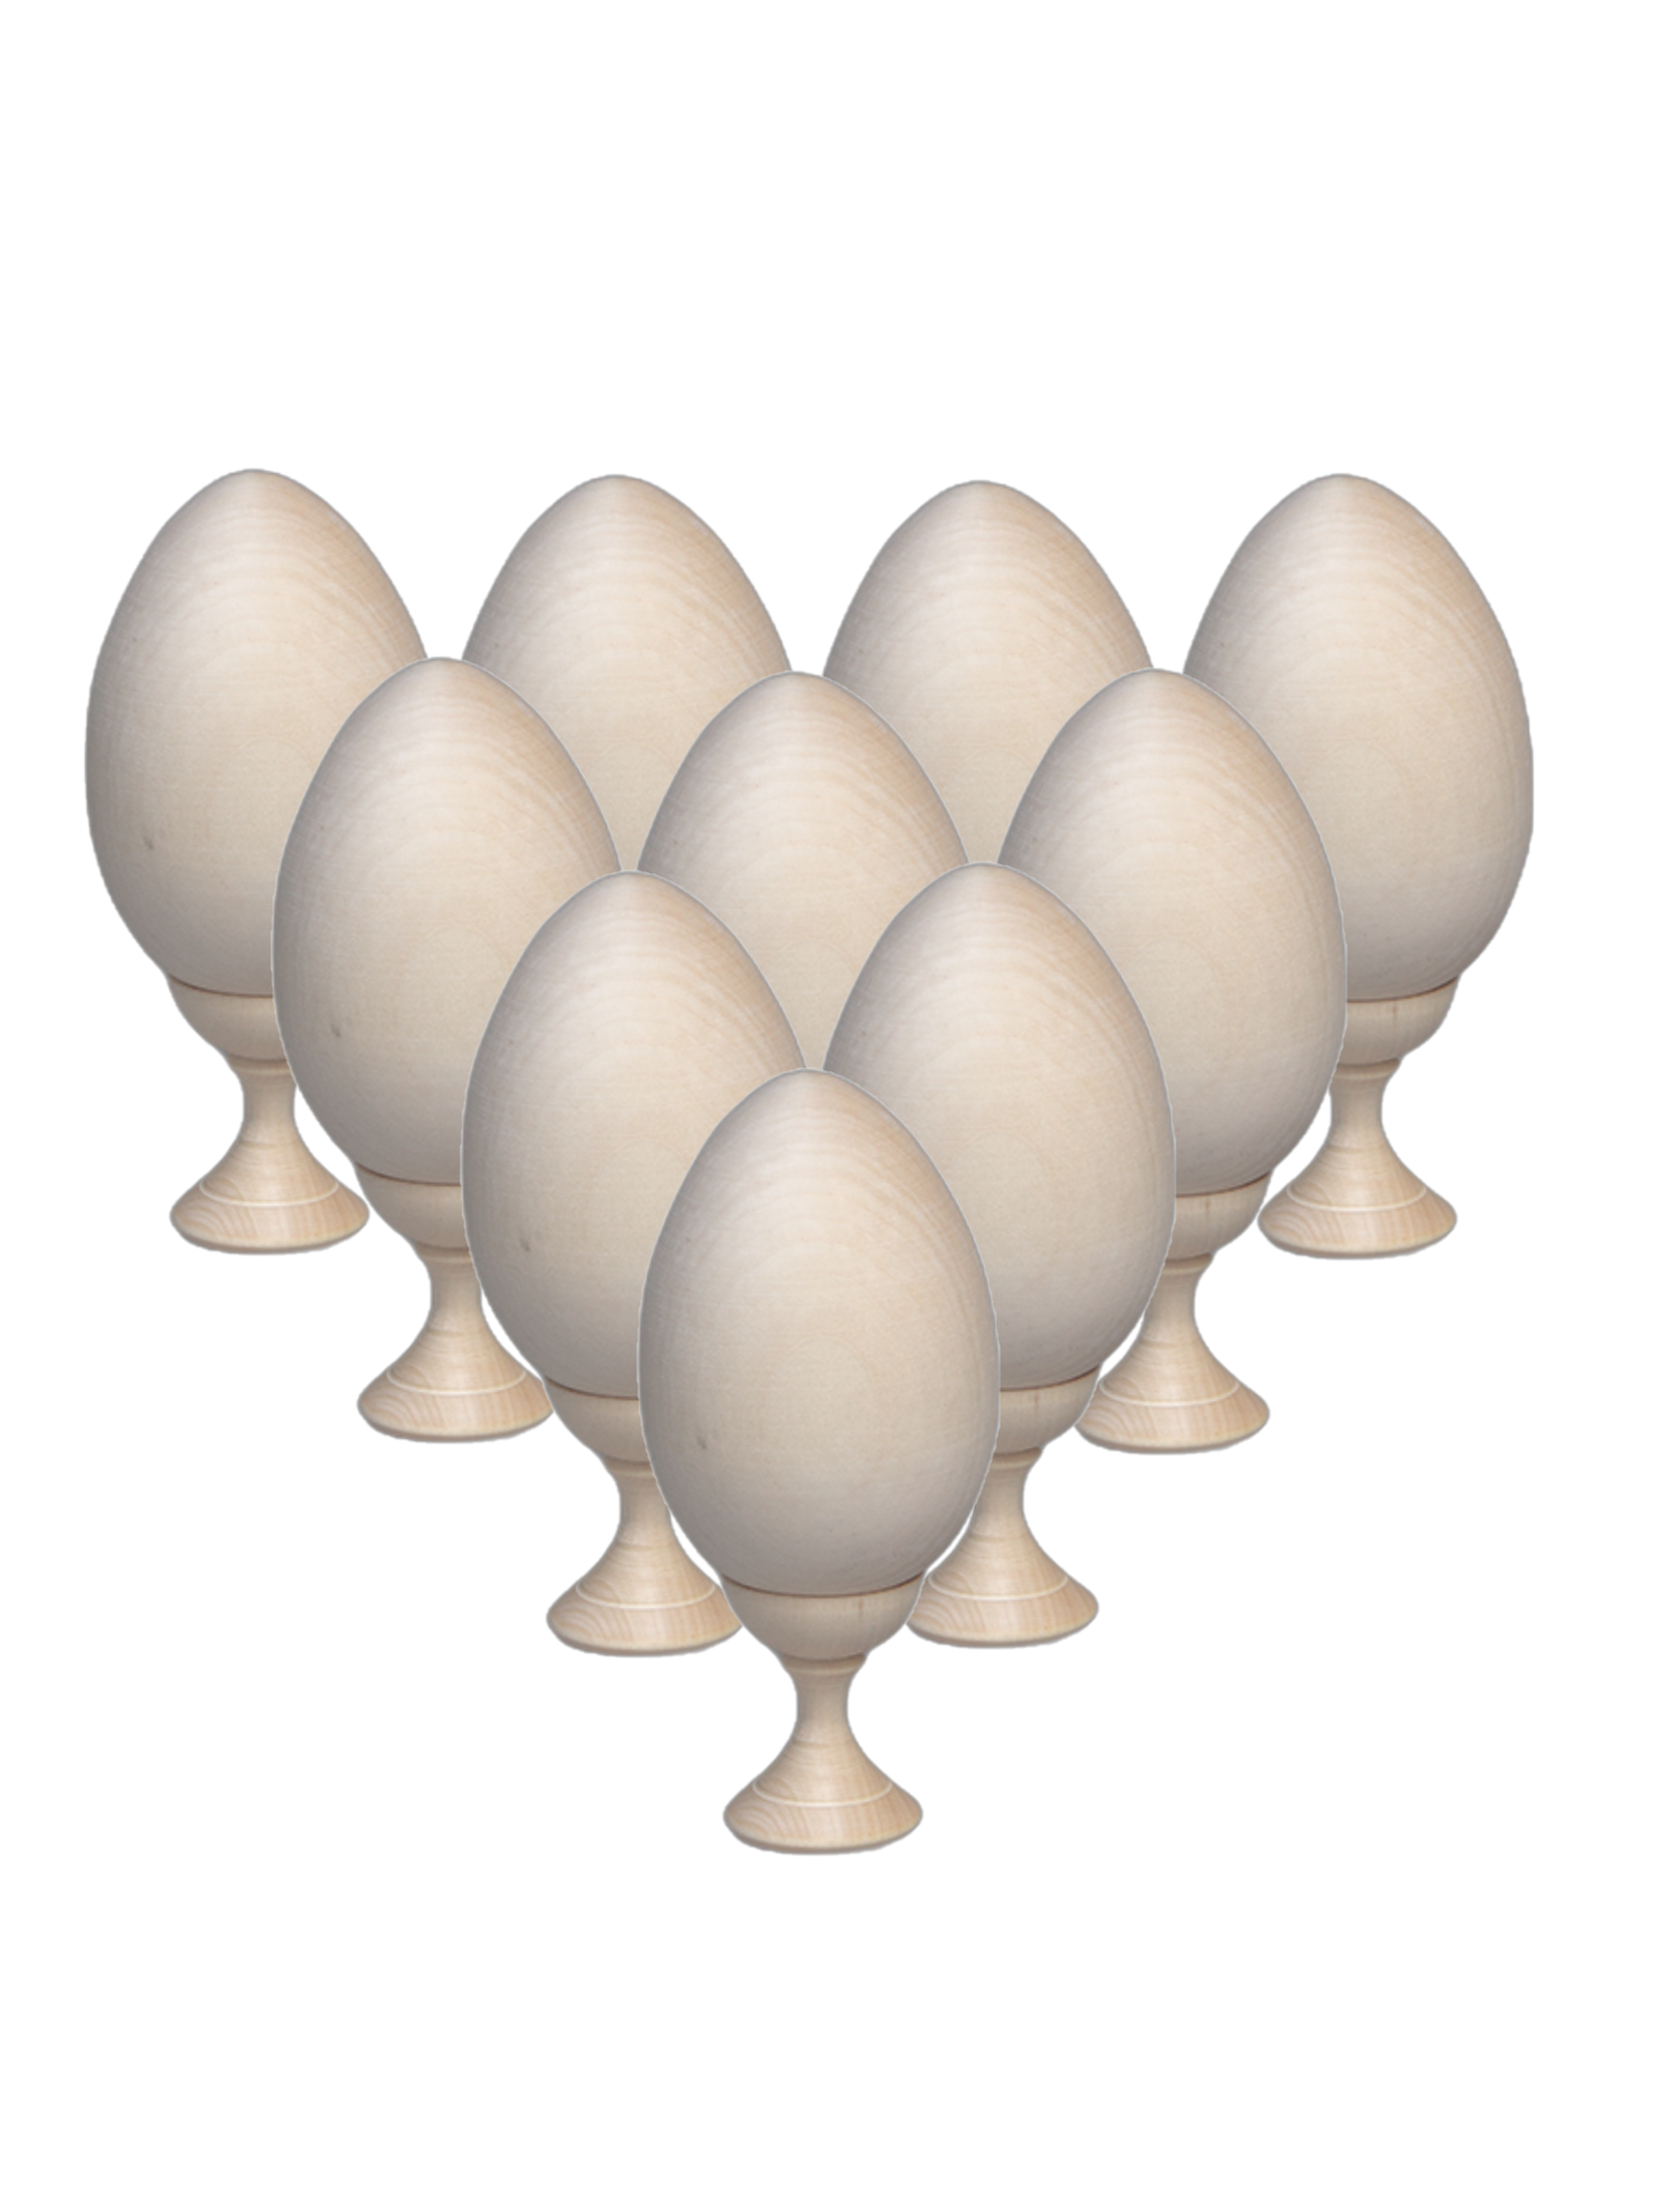 Яйцо пасхальное деревянное Тебе Игрушка заготовка для росписи с подставкой 10 штук